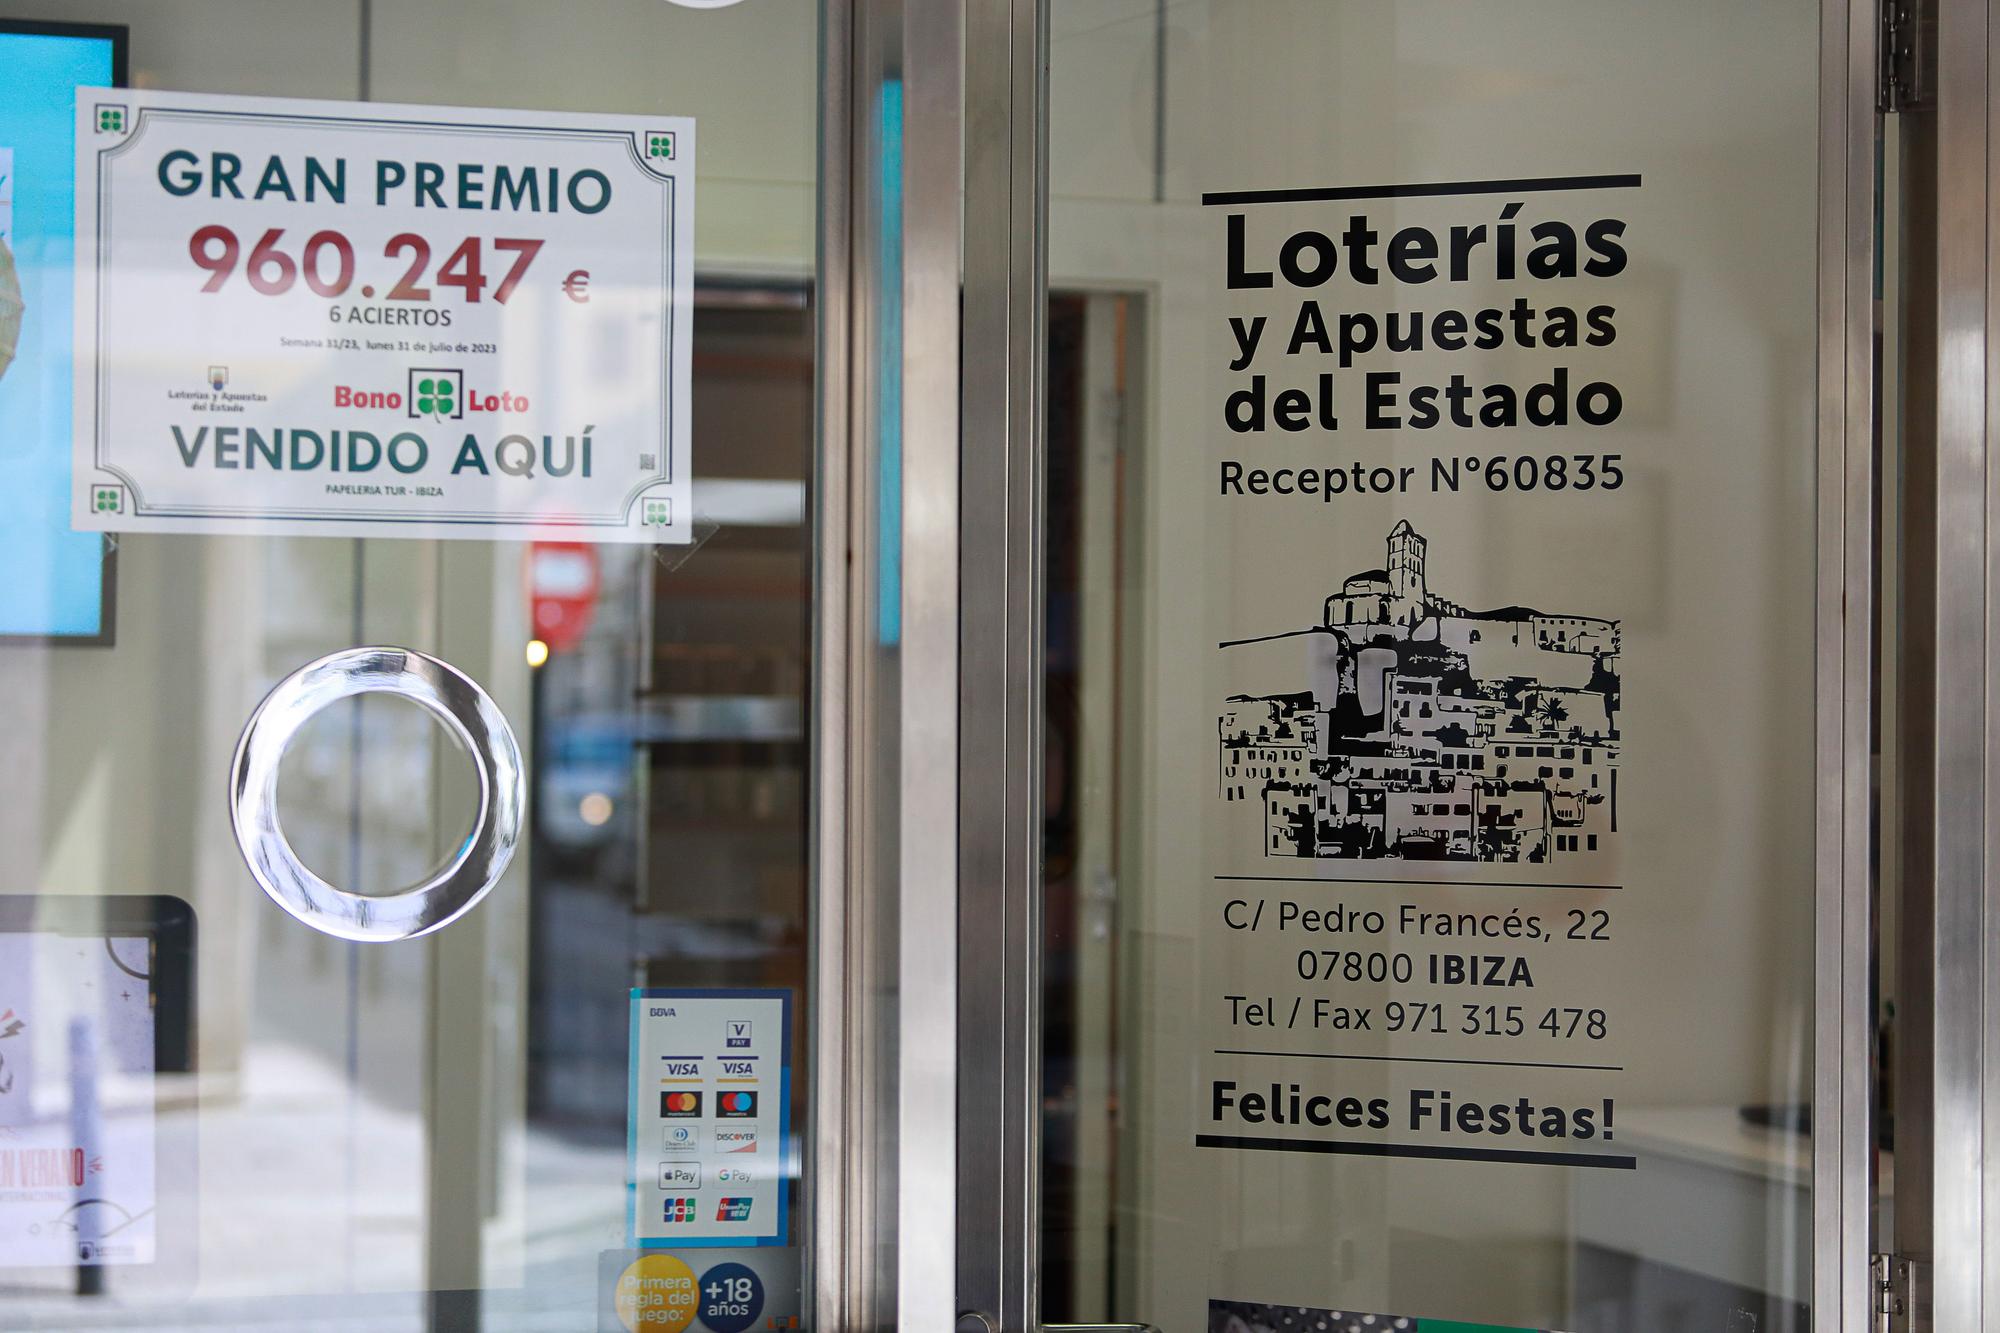 Galería de imágenes de la administración de lotería de la calle Pere Francesc de Ibiza